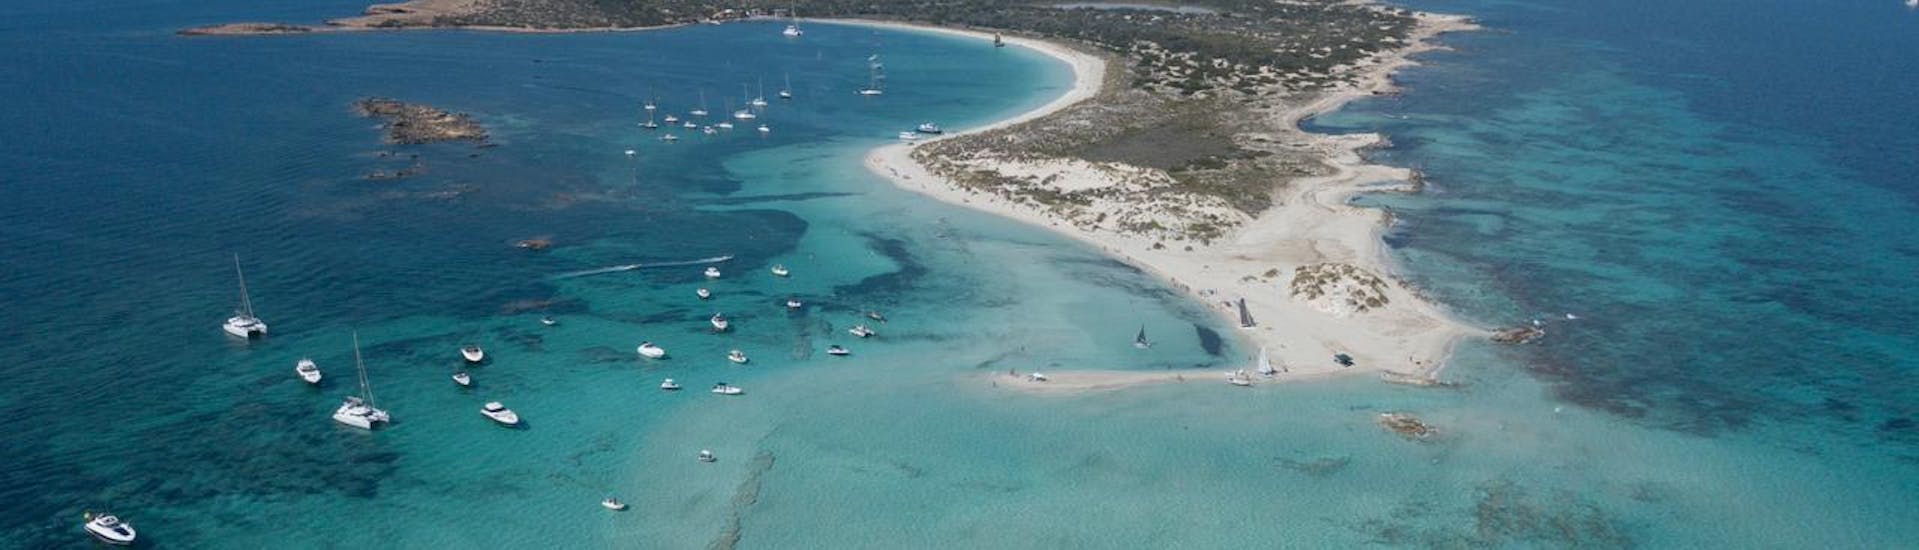 Imagen aérea de una de las zonas de Formentera que puedes visitar con el alquiler de catamarán para 5 personas con licencia de Wet4Fun Formentera